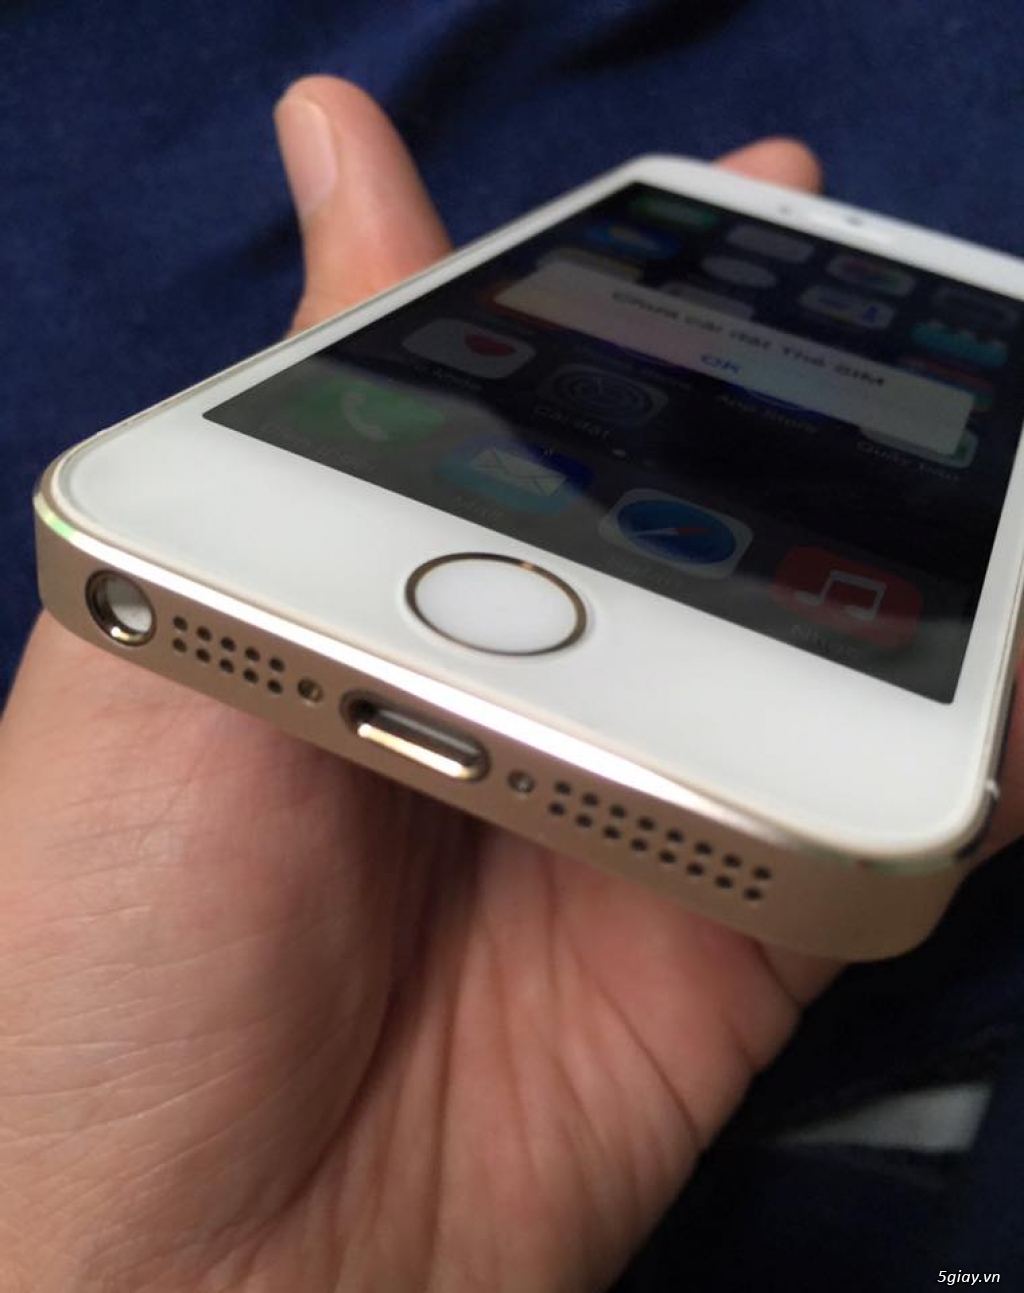 Iphone 5s 16gb gold zin từng con ốc đít - 2